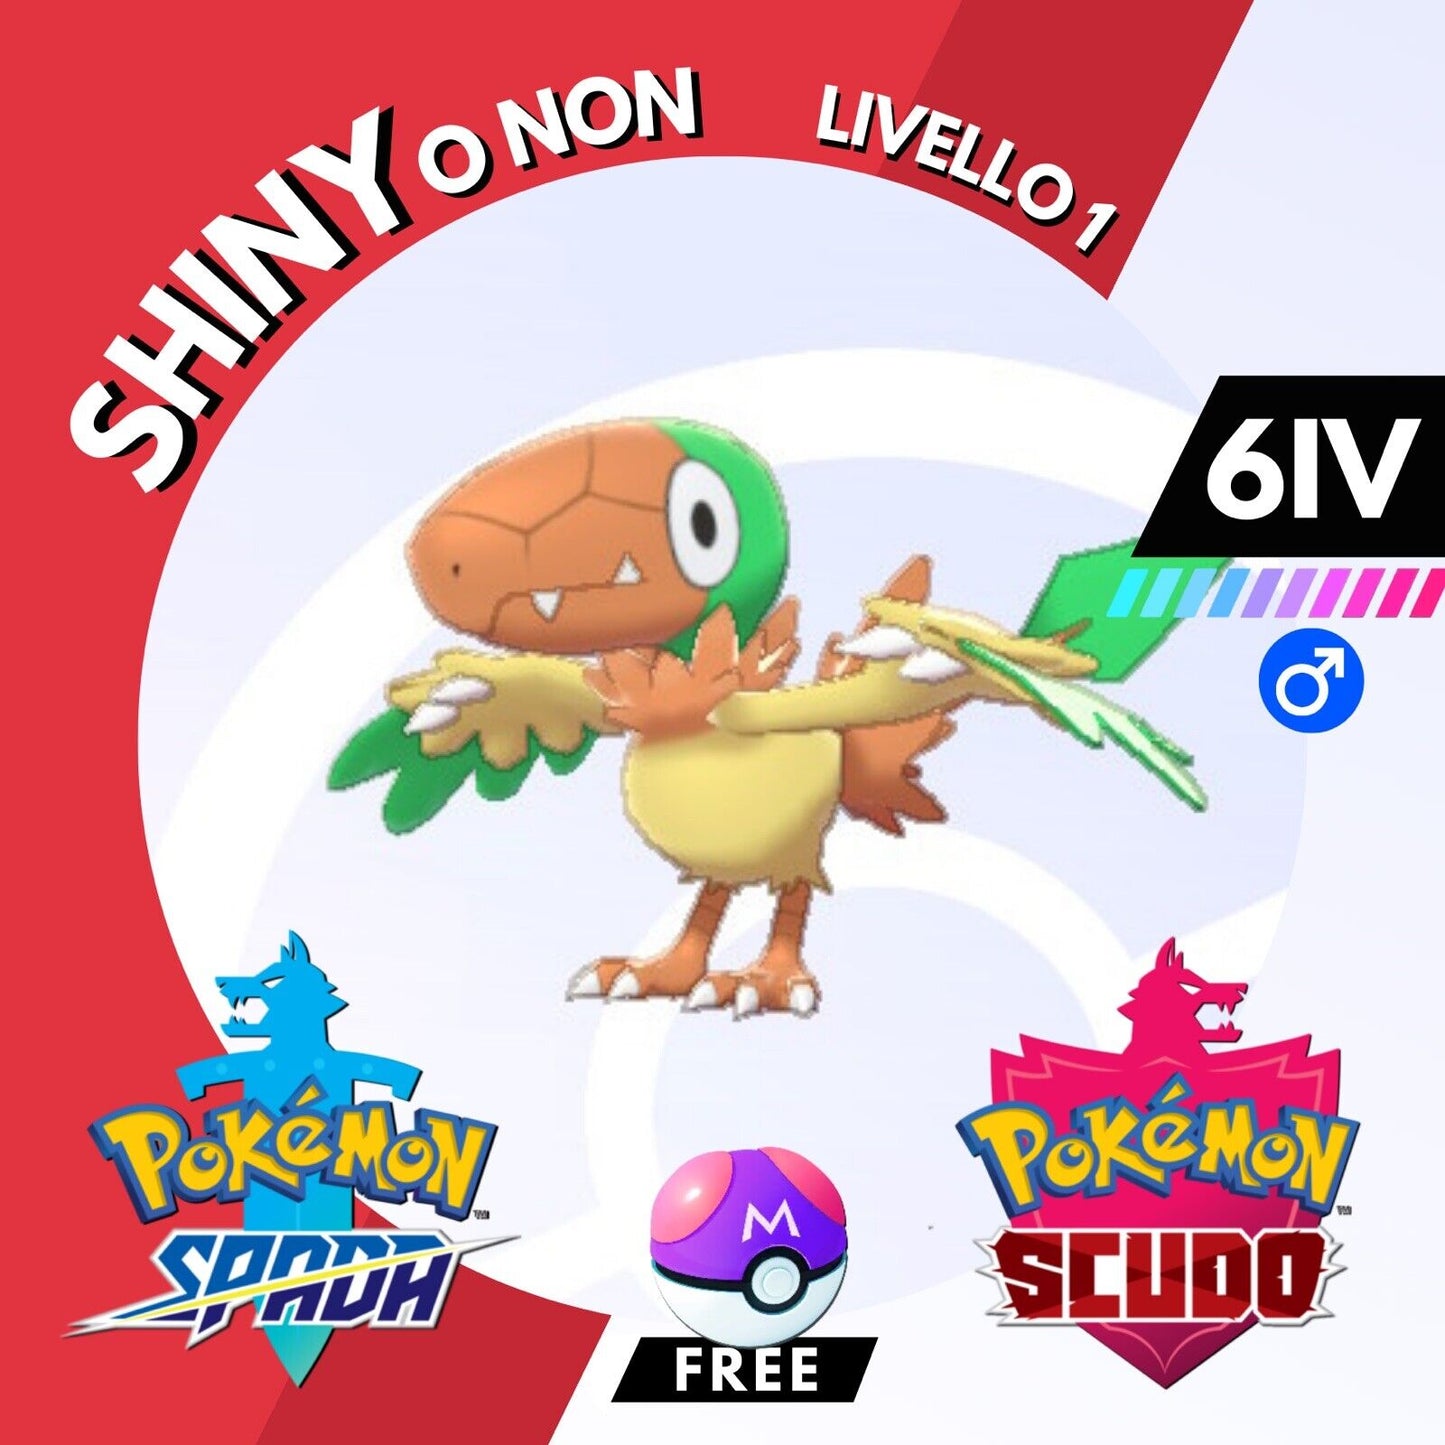 Archen Shiny o Non 6 IV e Master Ball Legit Pokemon Spada Scudo Sword Shield